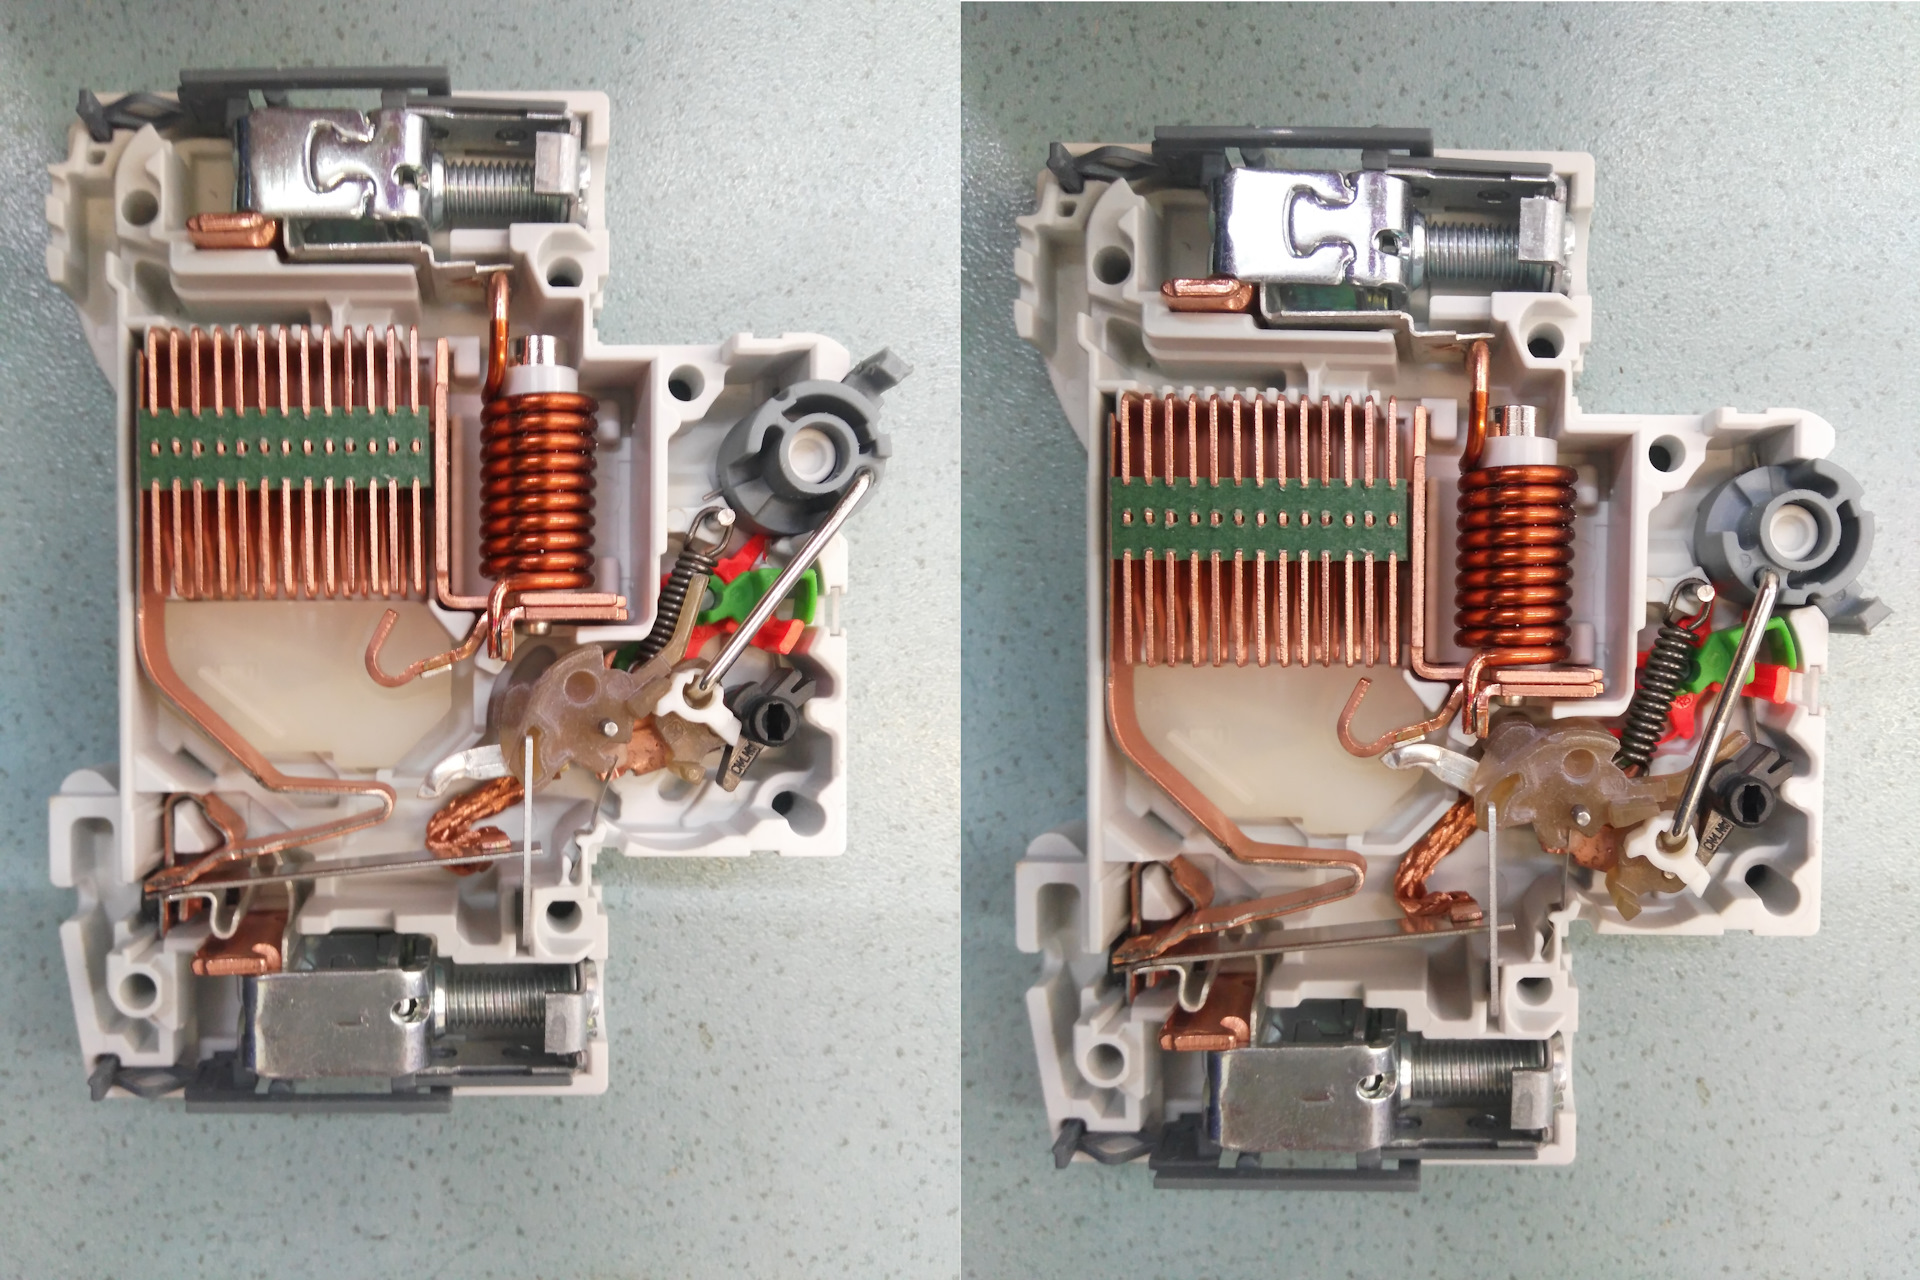 Встроенный автоматический выключатель. ABB автоматический выключатель в разрезе. Автоматический выключатель 6а устройство. Из чего состоит автоматический выключатель 16а. Электромагнитный расцепитель ап-50.